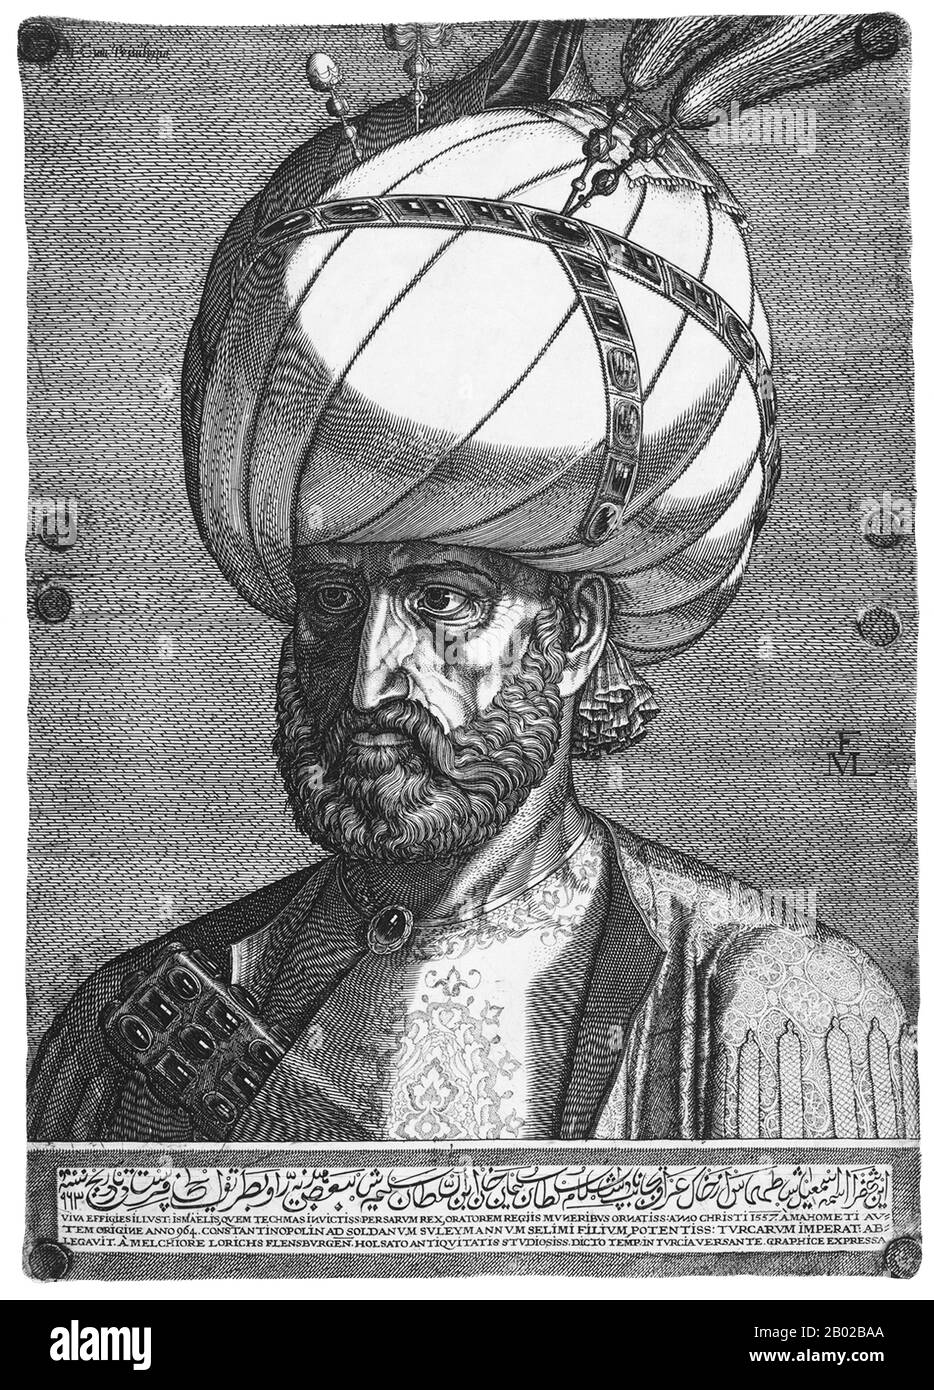 Ismāʻīl (più tardi noto come Ismāʻīl II), fu figlio del 2nd governatore Safavid Shah Ṭahmāsp i (1524-1576) e rappresentante diplomatico alla corte del sultano ottomano Suleiman I. divenne il 3rd governatore safavide dell'Iran nel 1576 sulla morte del padre. Foto Stock